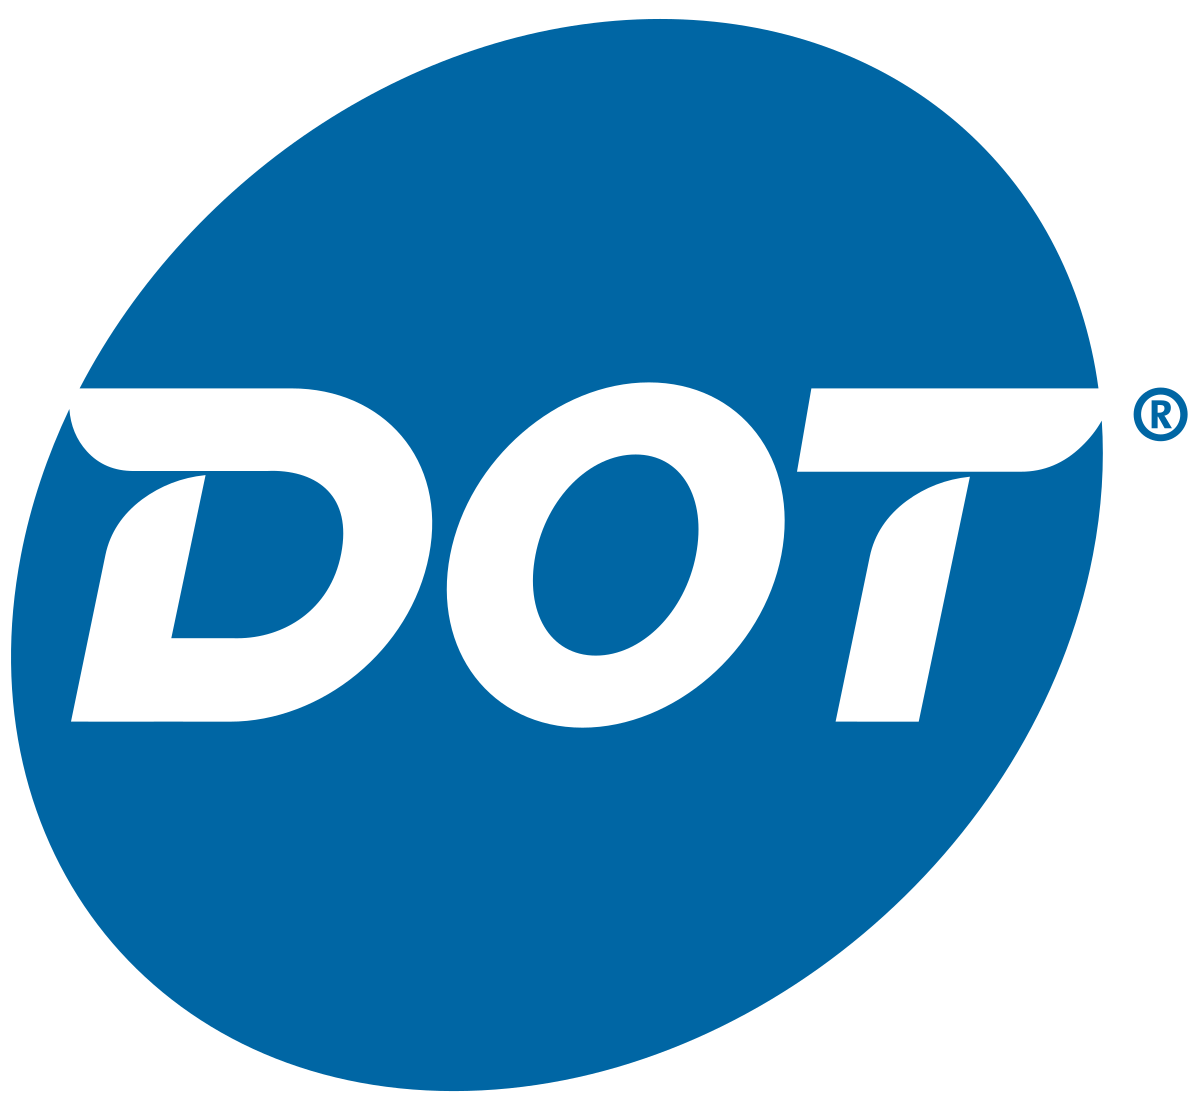 D. Dot Foods (Nivel 4)